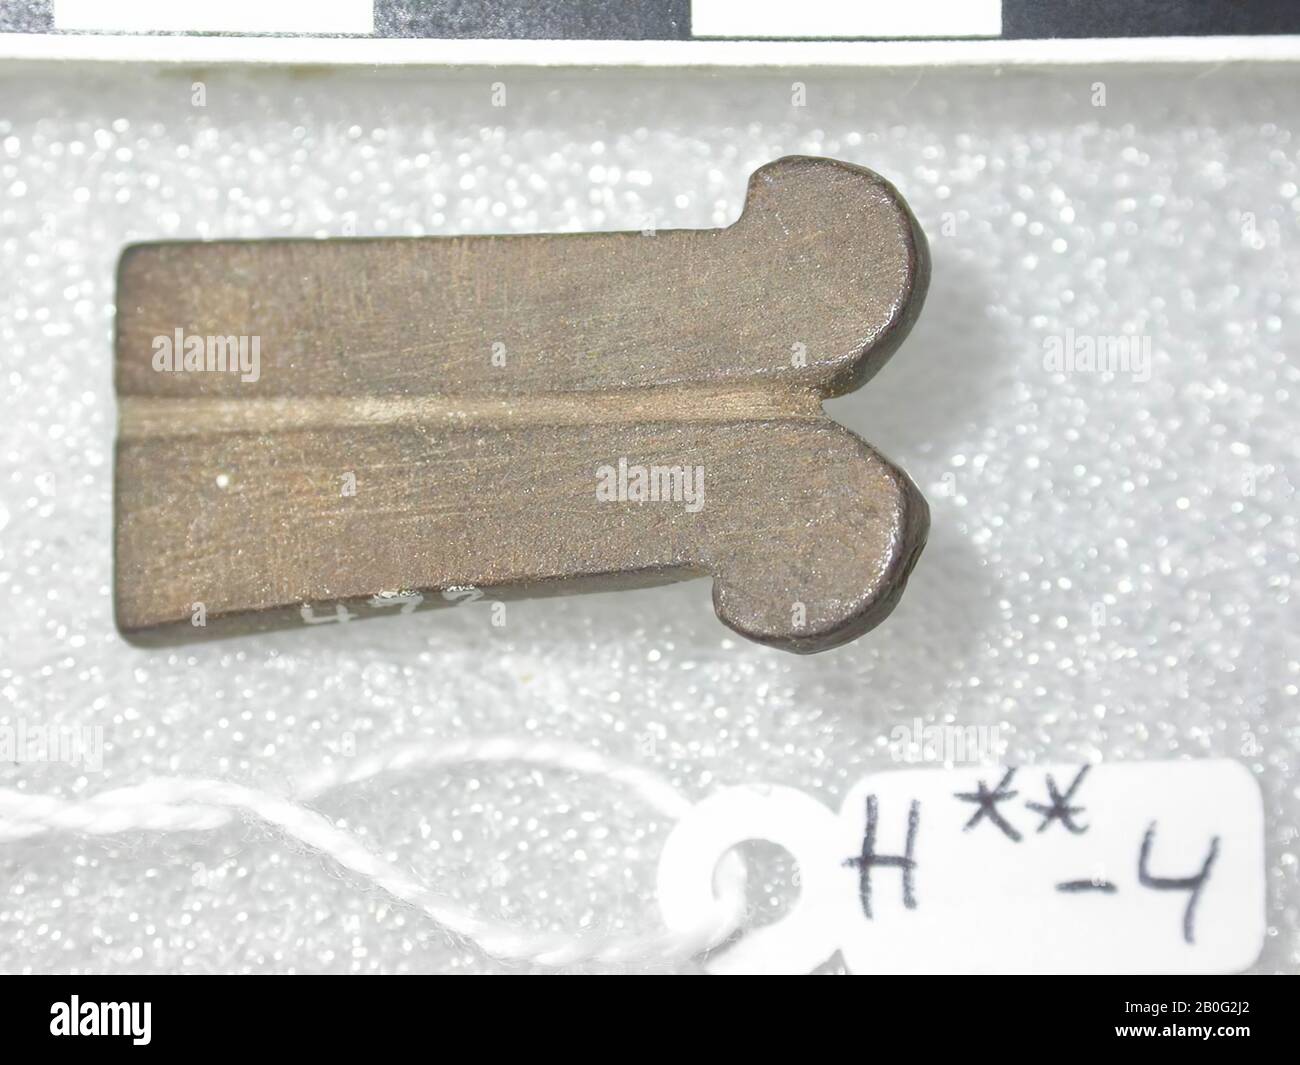 Egypte, amulet, objet, pierre, marron clair, 2,7 cm, emplacement, Egypte Banque D'Images